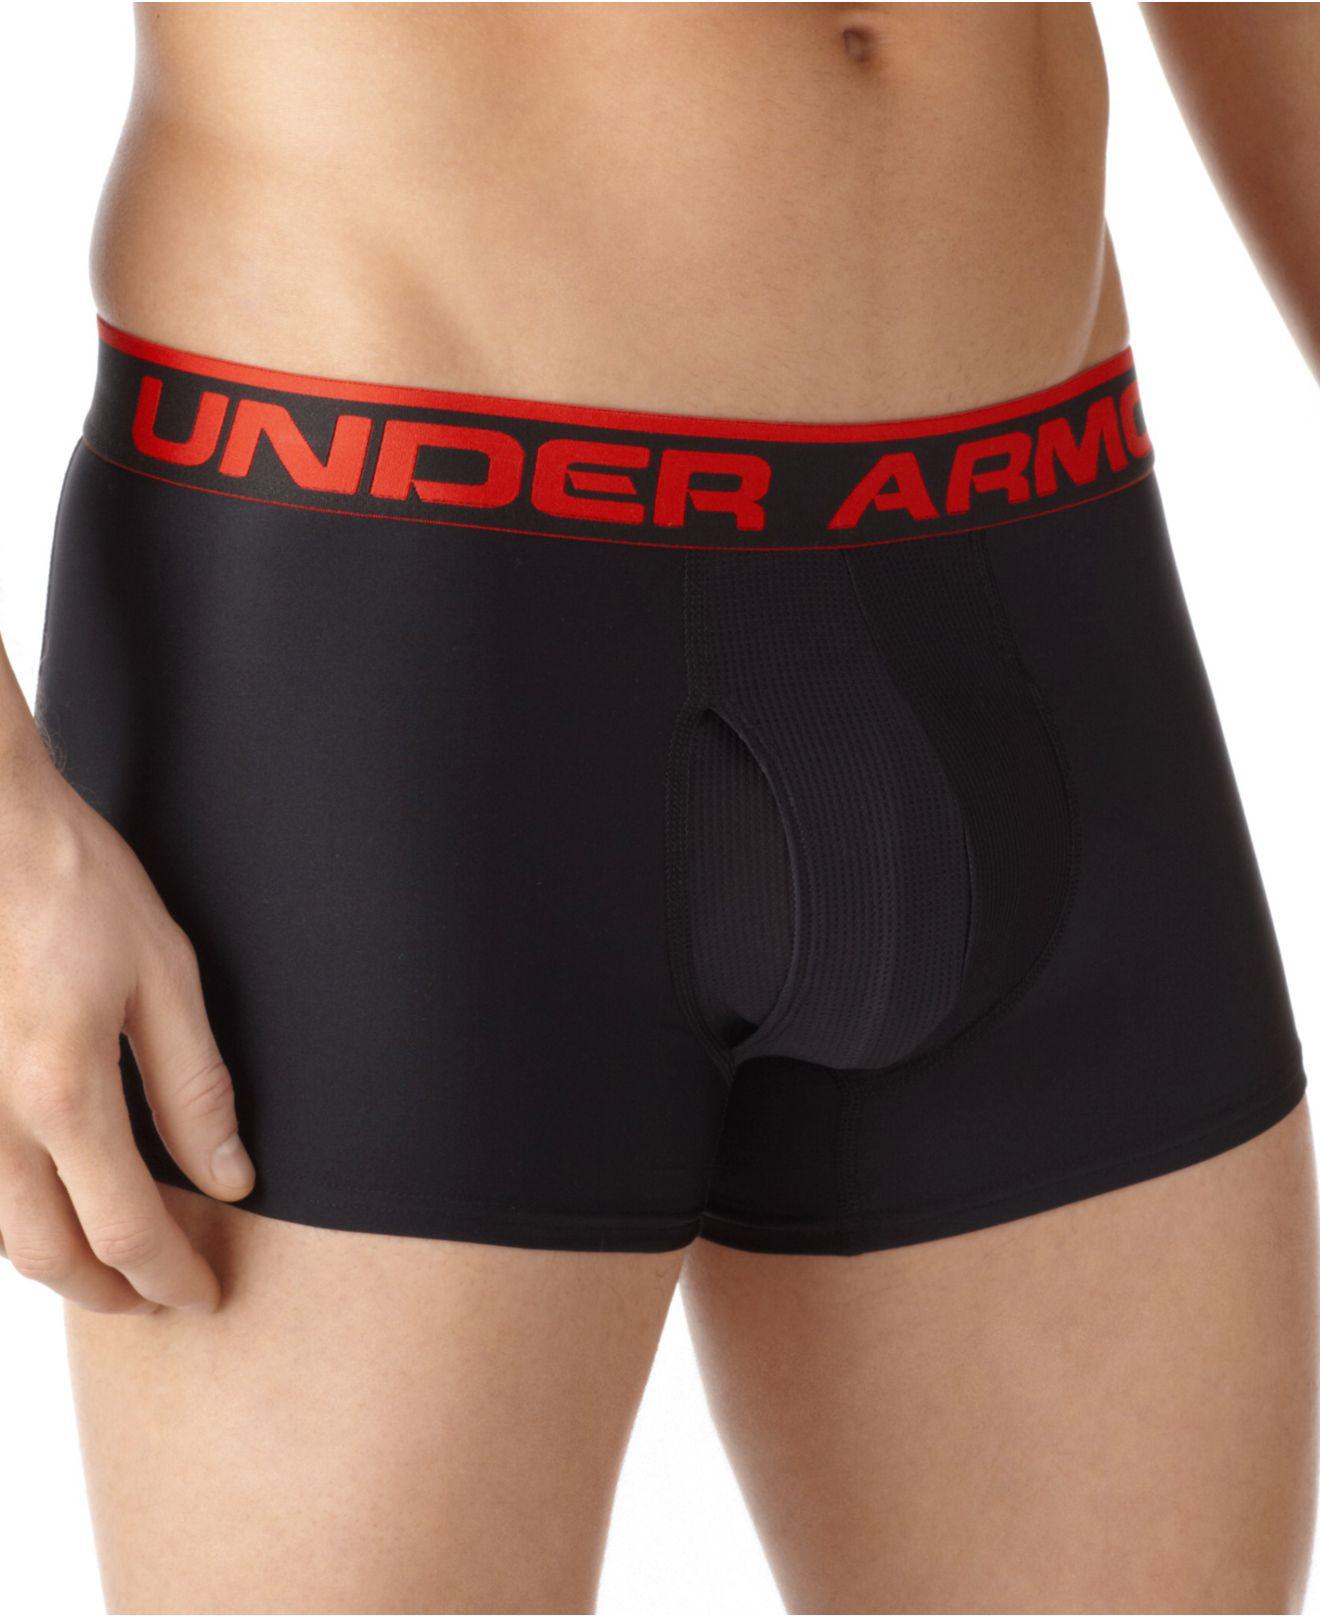 Under Armour Cotton Underwear, Original Series Trunk in Black for Men - Lyst